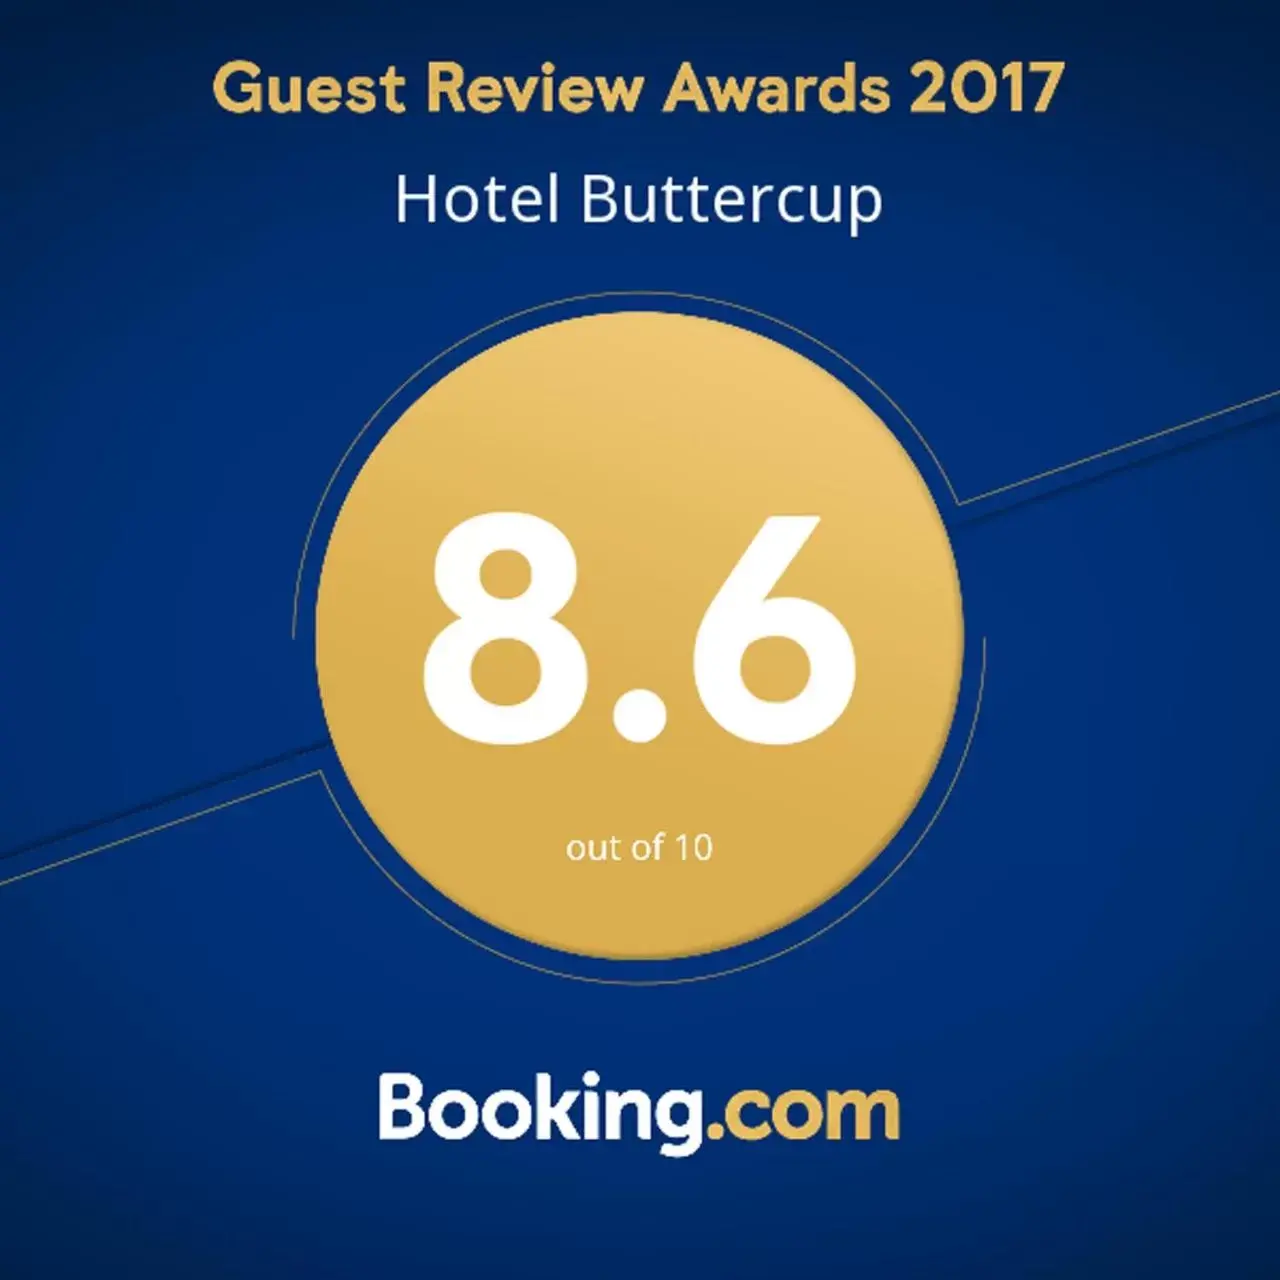 Certificate/Award in Hotel Buttercup